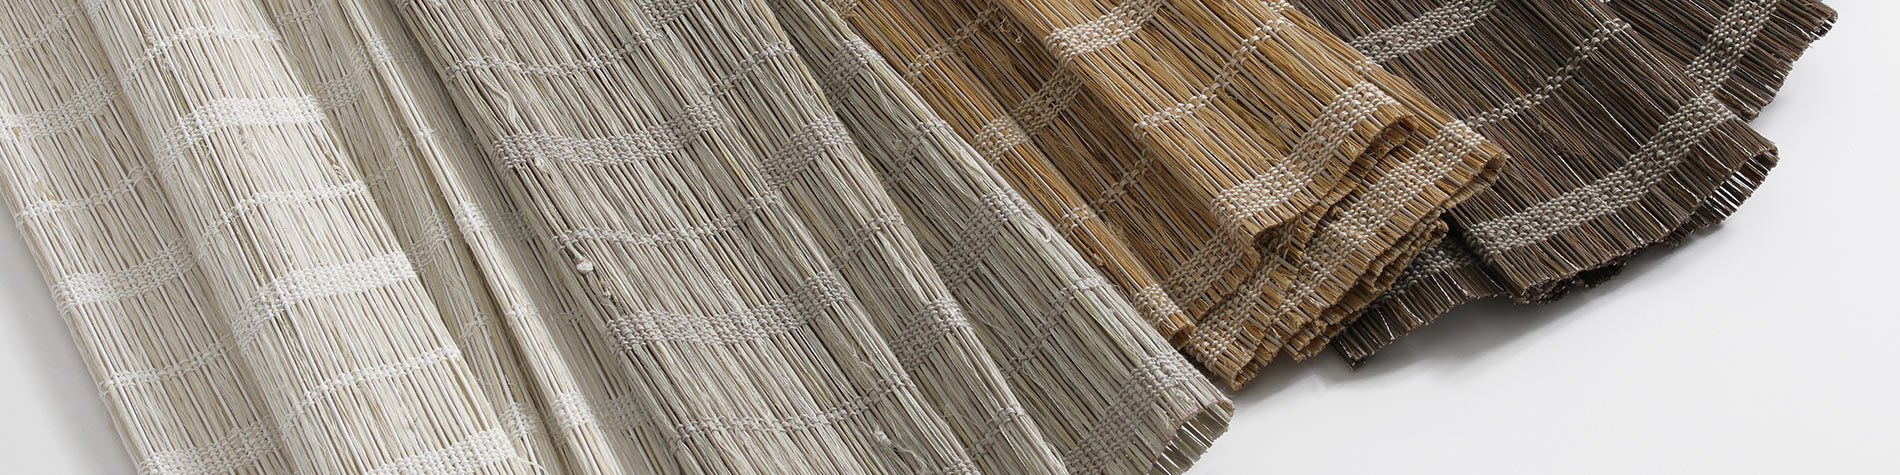 Tejidos, Bambú y Materiales de Madera